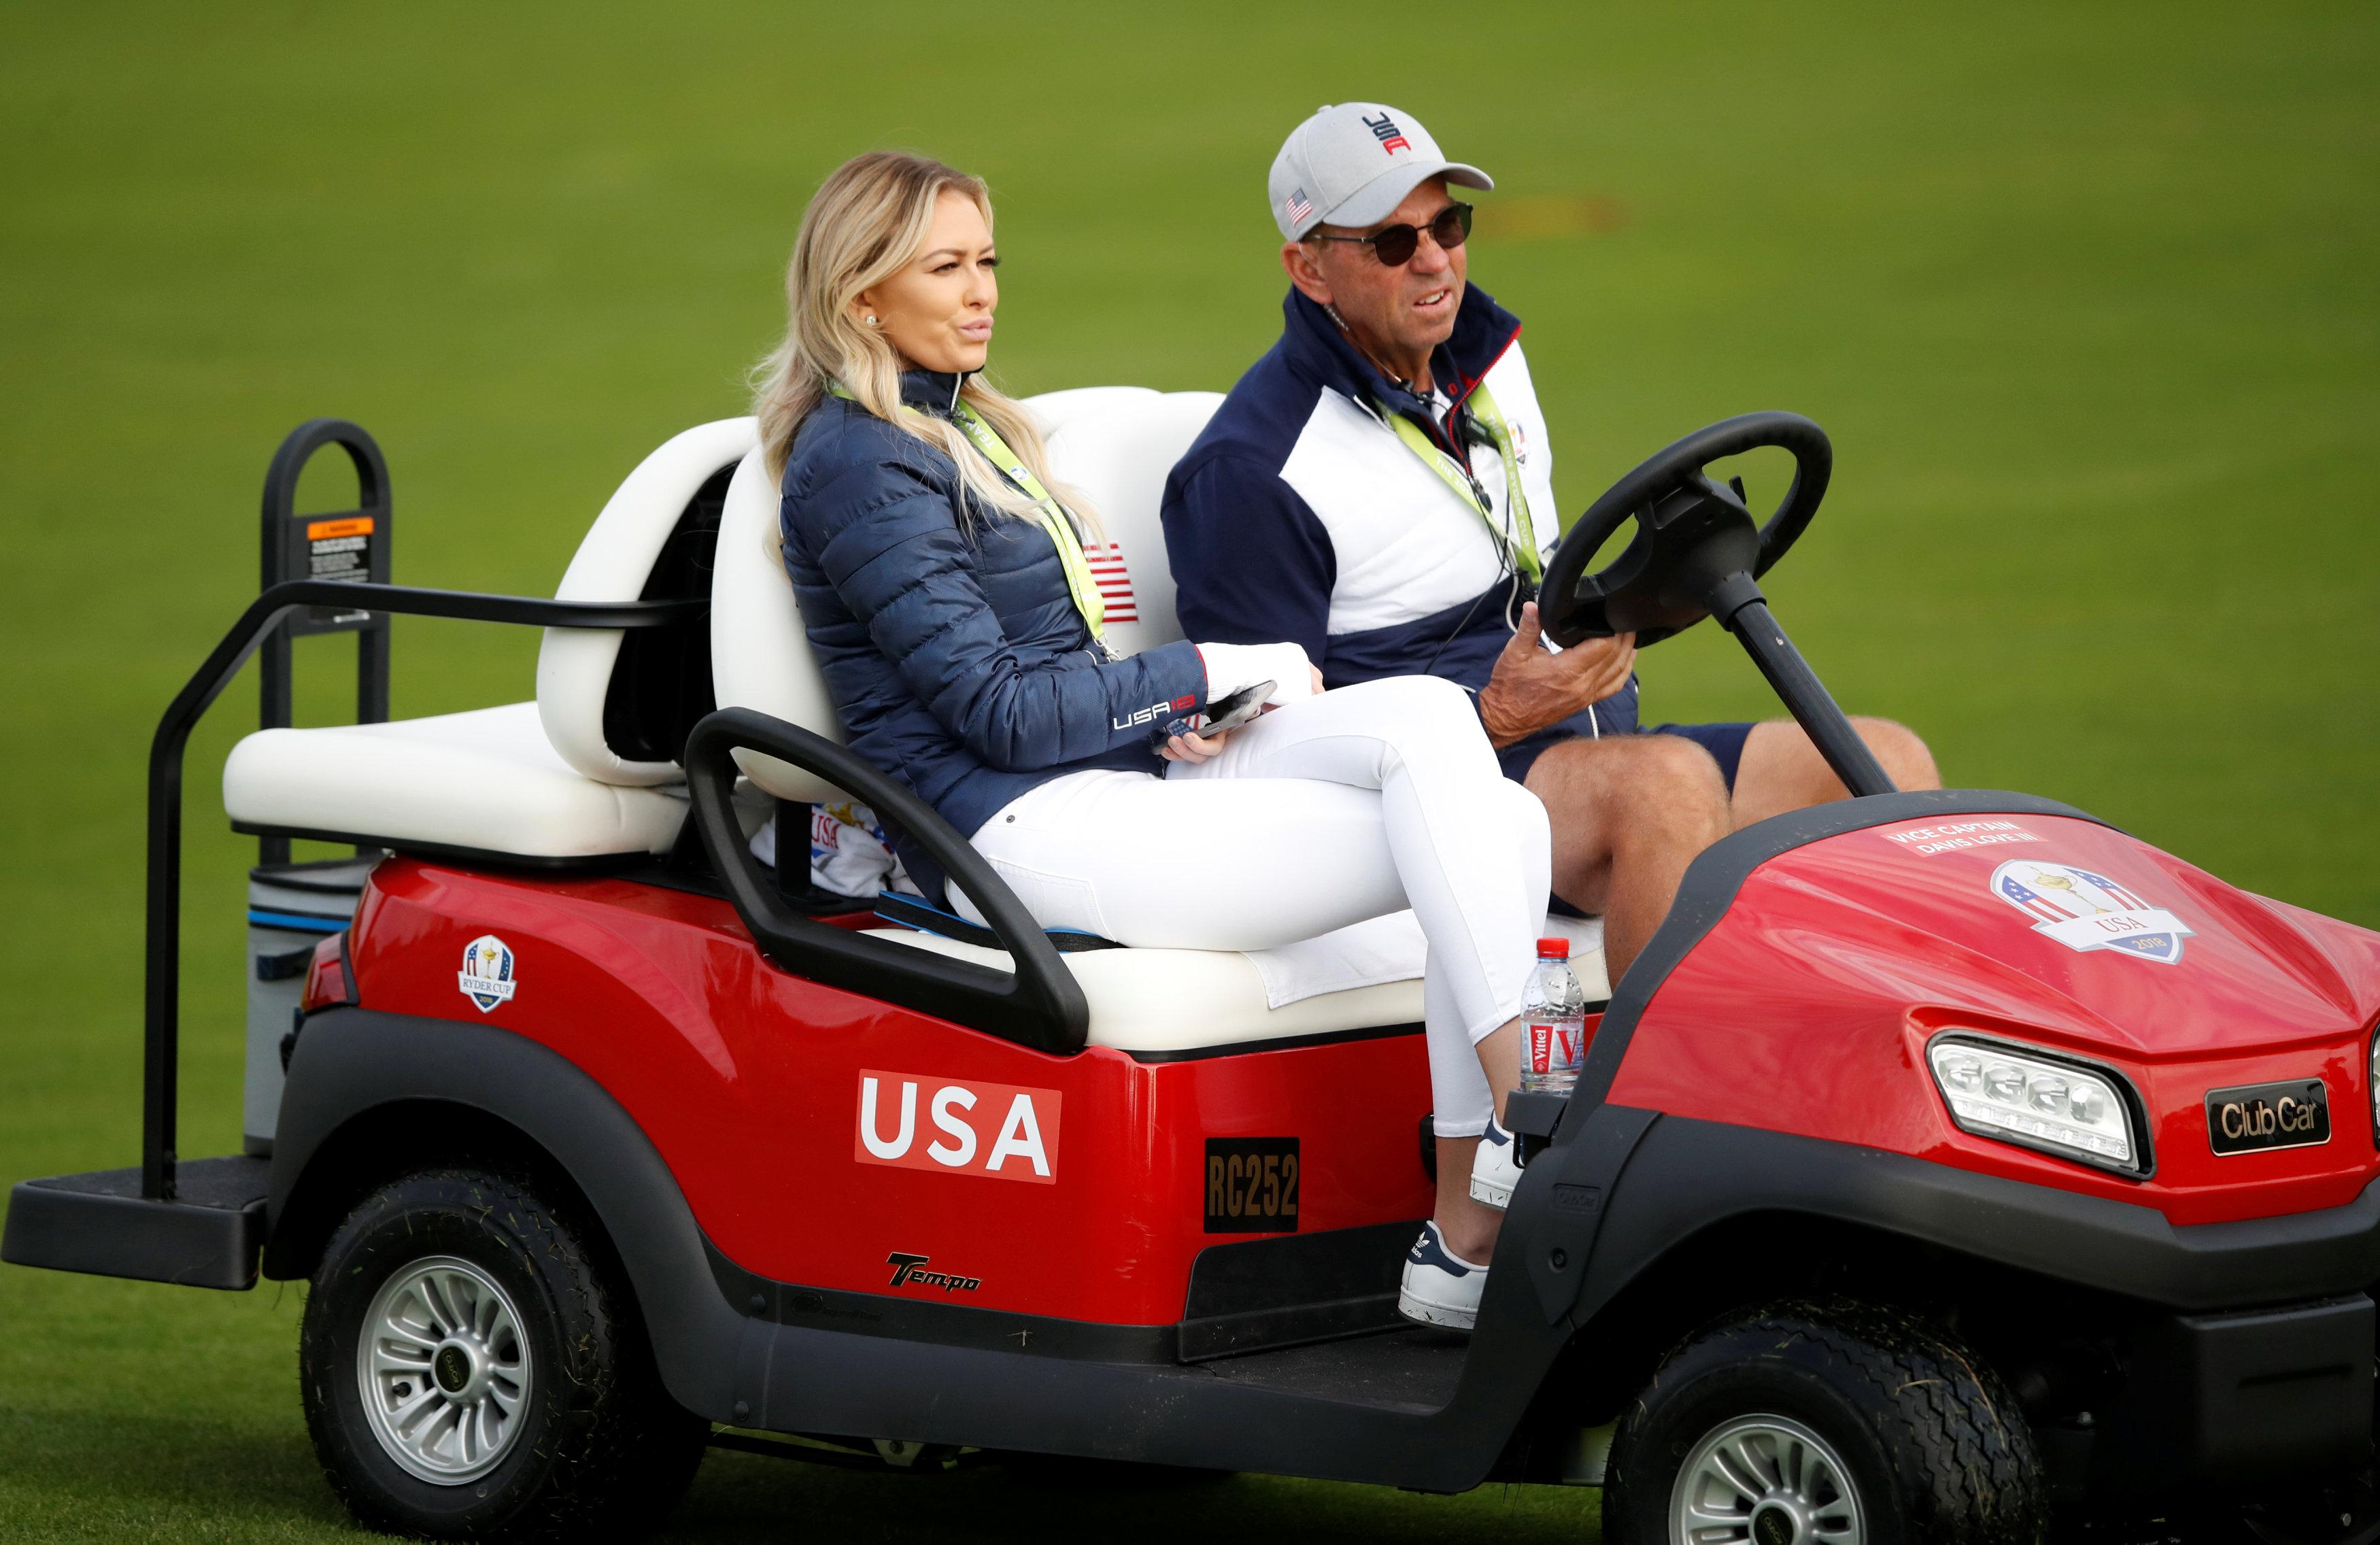 Модель невесты Дастина Джонсона Полина Гретцки проехала по трассе в багги для гольфа, в то время как ее звездный партнер по сборной США получил хорошее начало